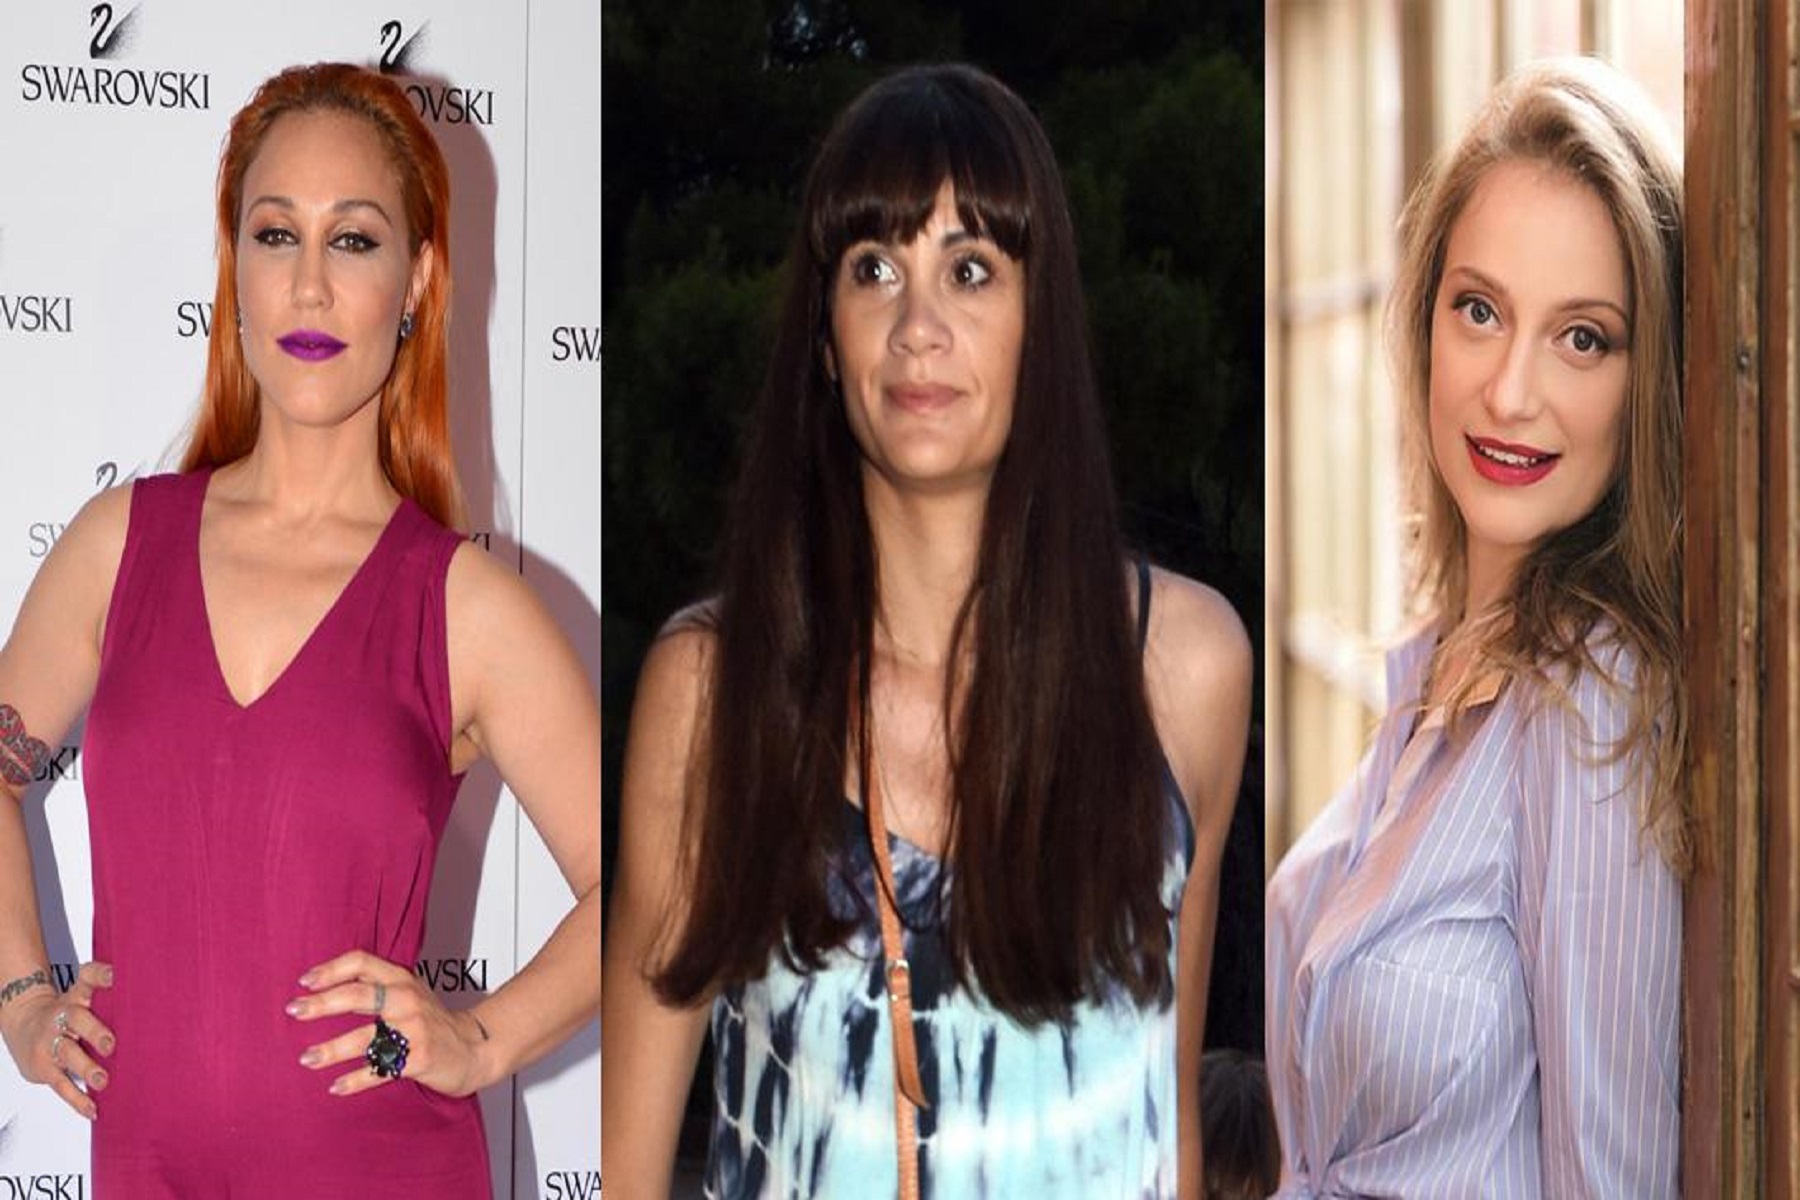 Σωματείο Ελλήνων Ηθοποιών: Καταγγελία τριών γνωστών ηθοποιών κατά συναδέλφου τους για την προσβολή της γενετήσιας αξιοπρέπειά τους